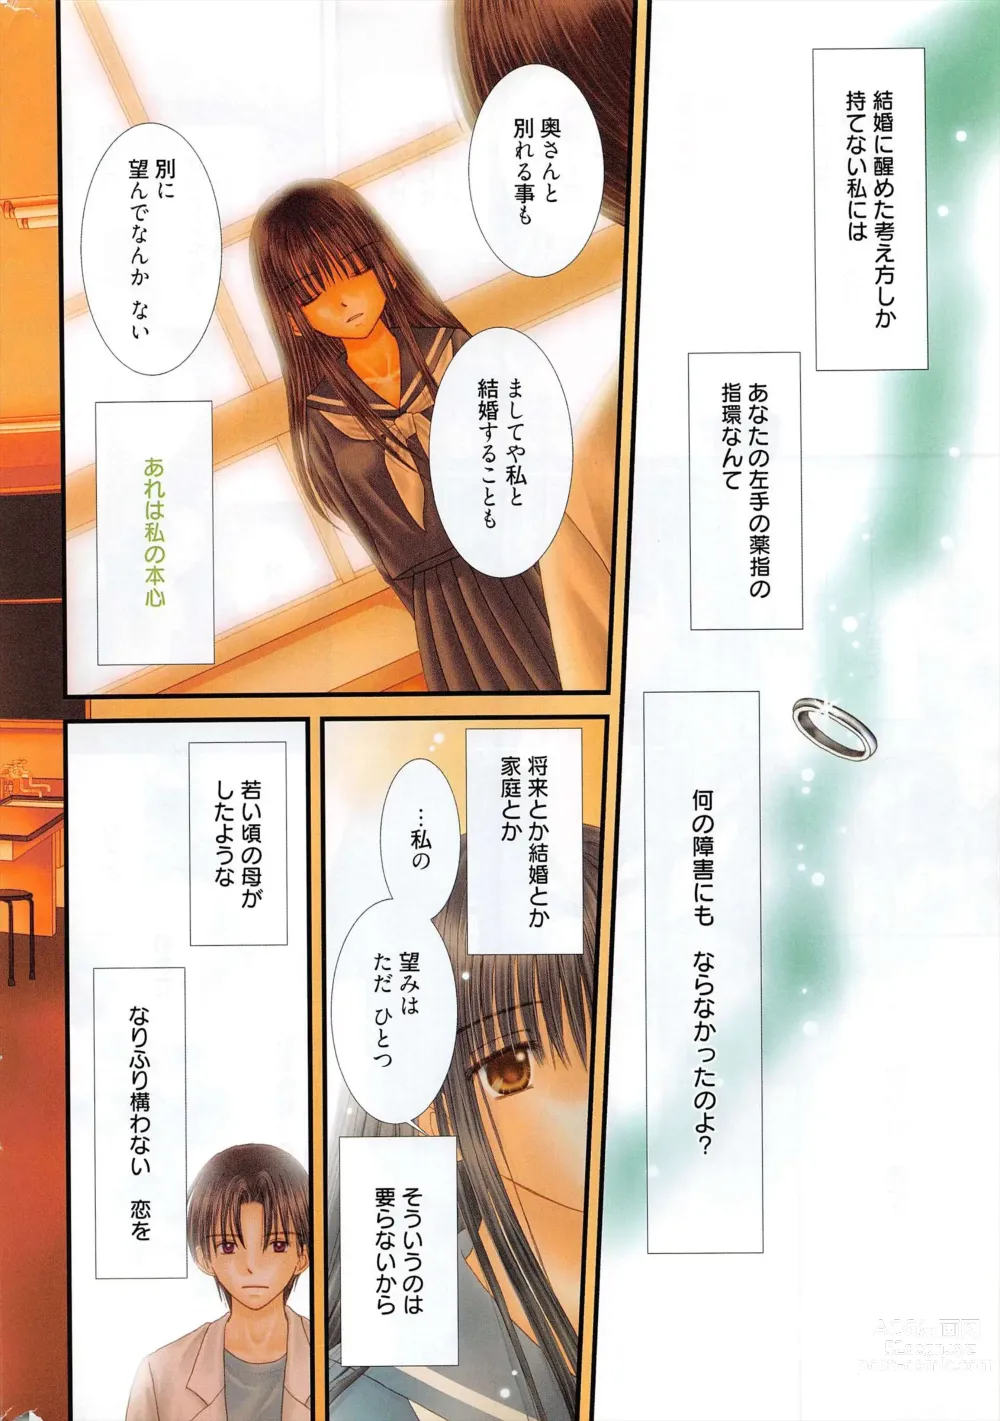 Page 335 of manga Manga Bangaichi 2012-09